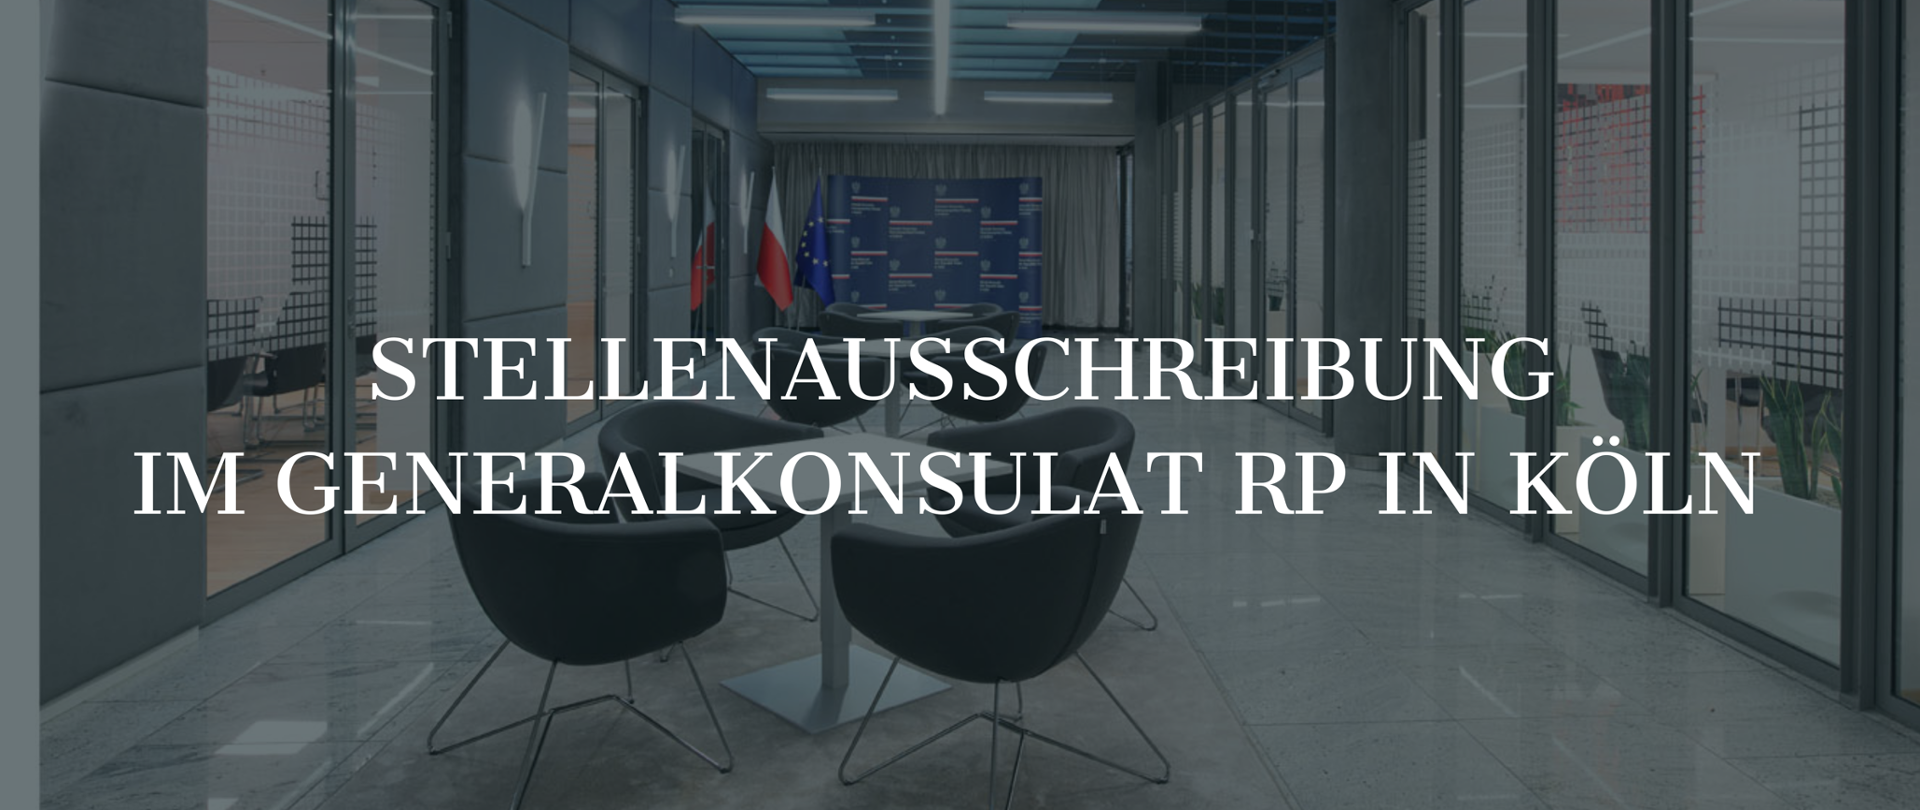 Stellenausschreibung im Generalkonsulat der Republik Polen in Köln